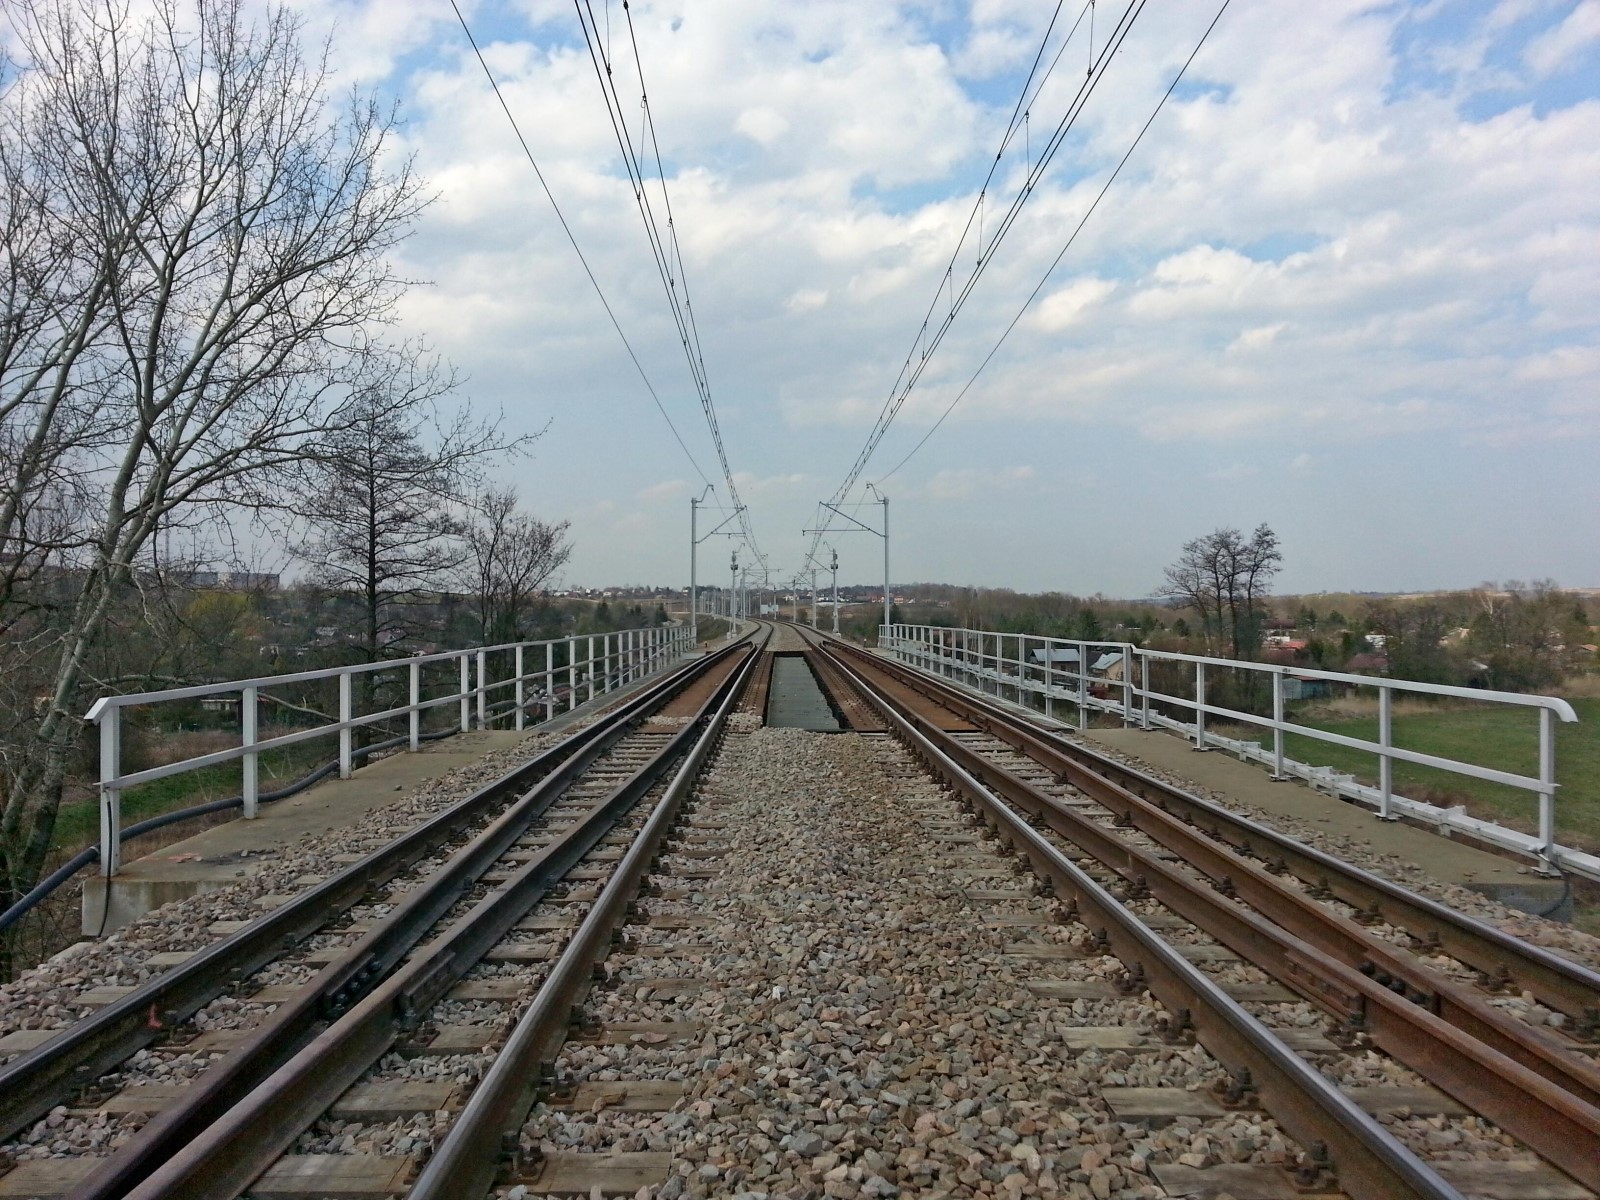 Prace budowlane na torze kolejowym, Kraków  - Edilizia ferroviaria